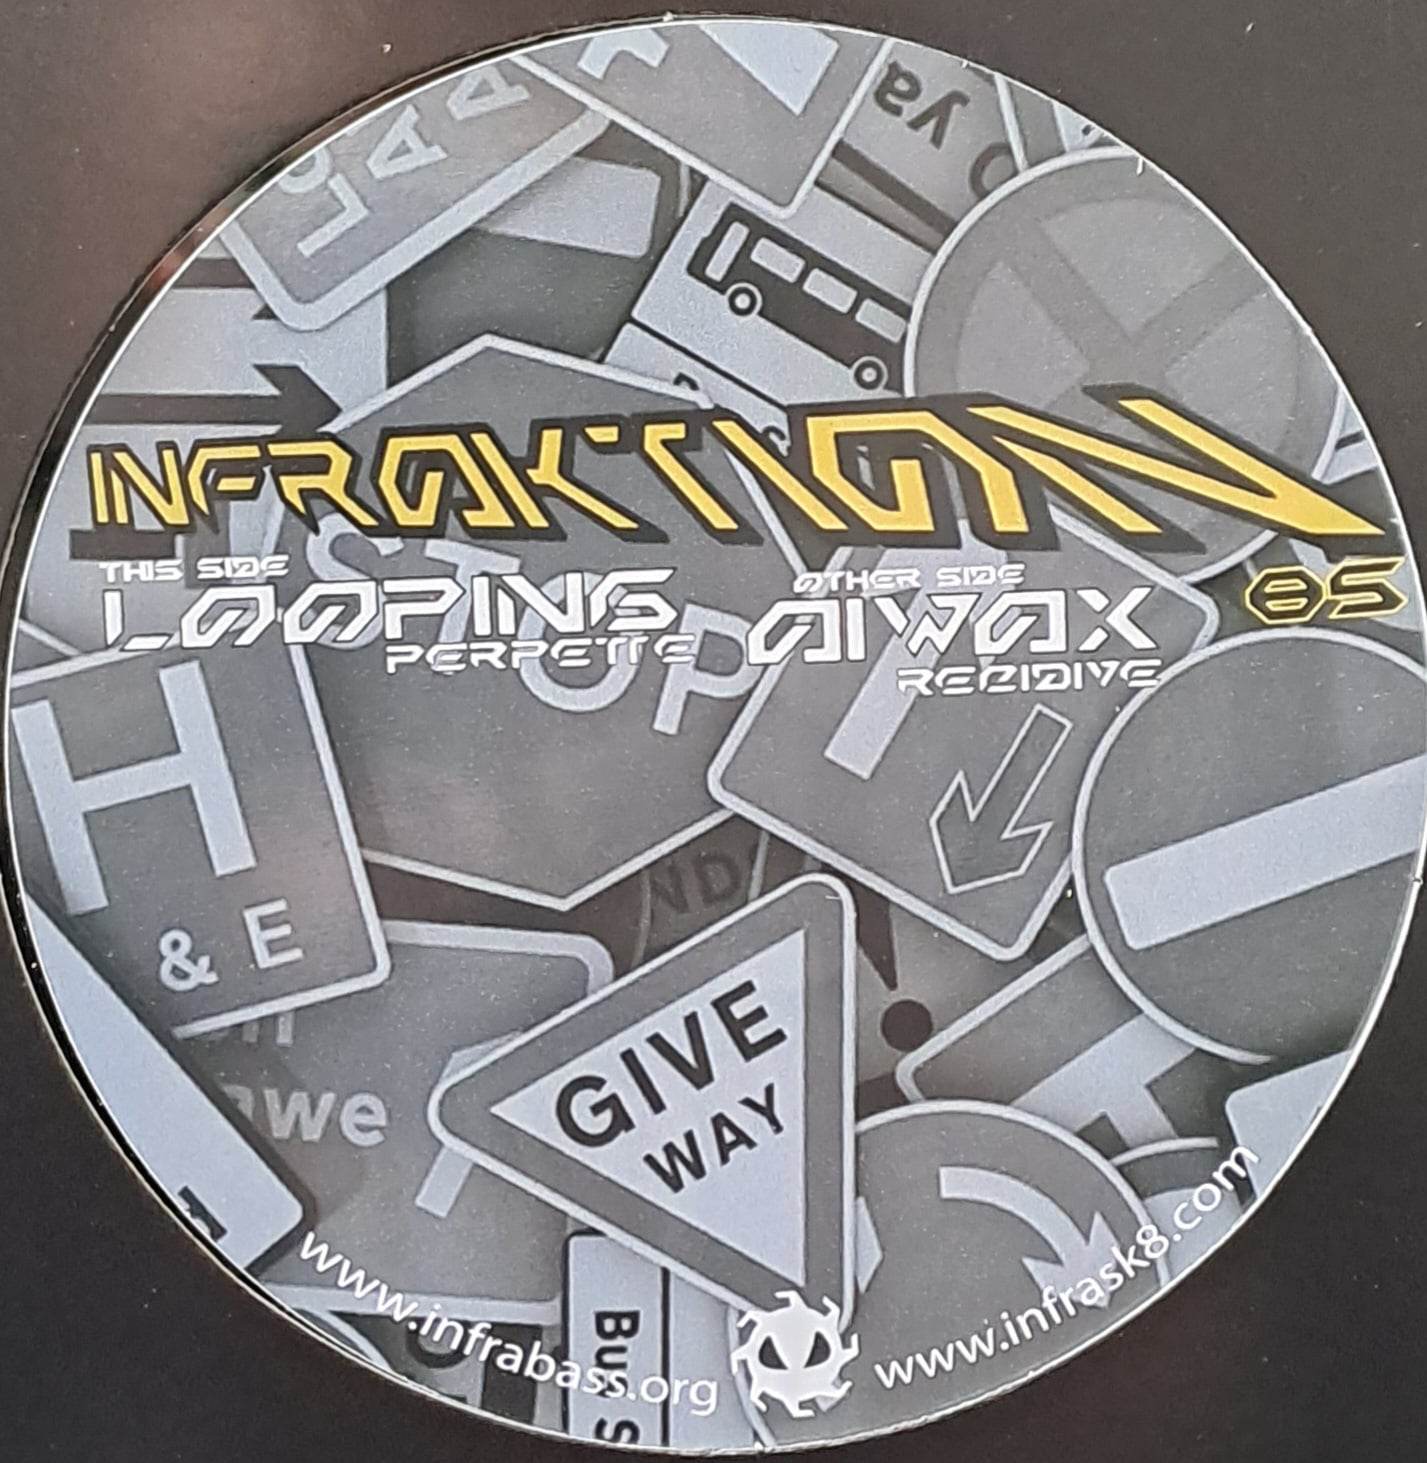 Infraktion 05 RP (toute dernière copie en stock) - vinyle hardcore